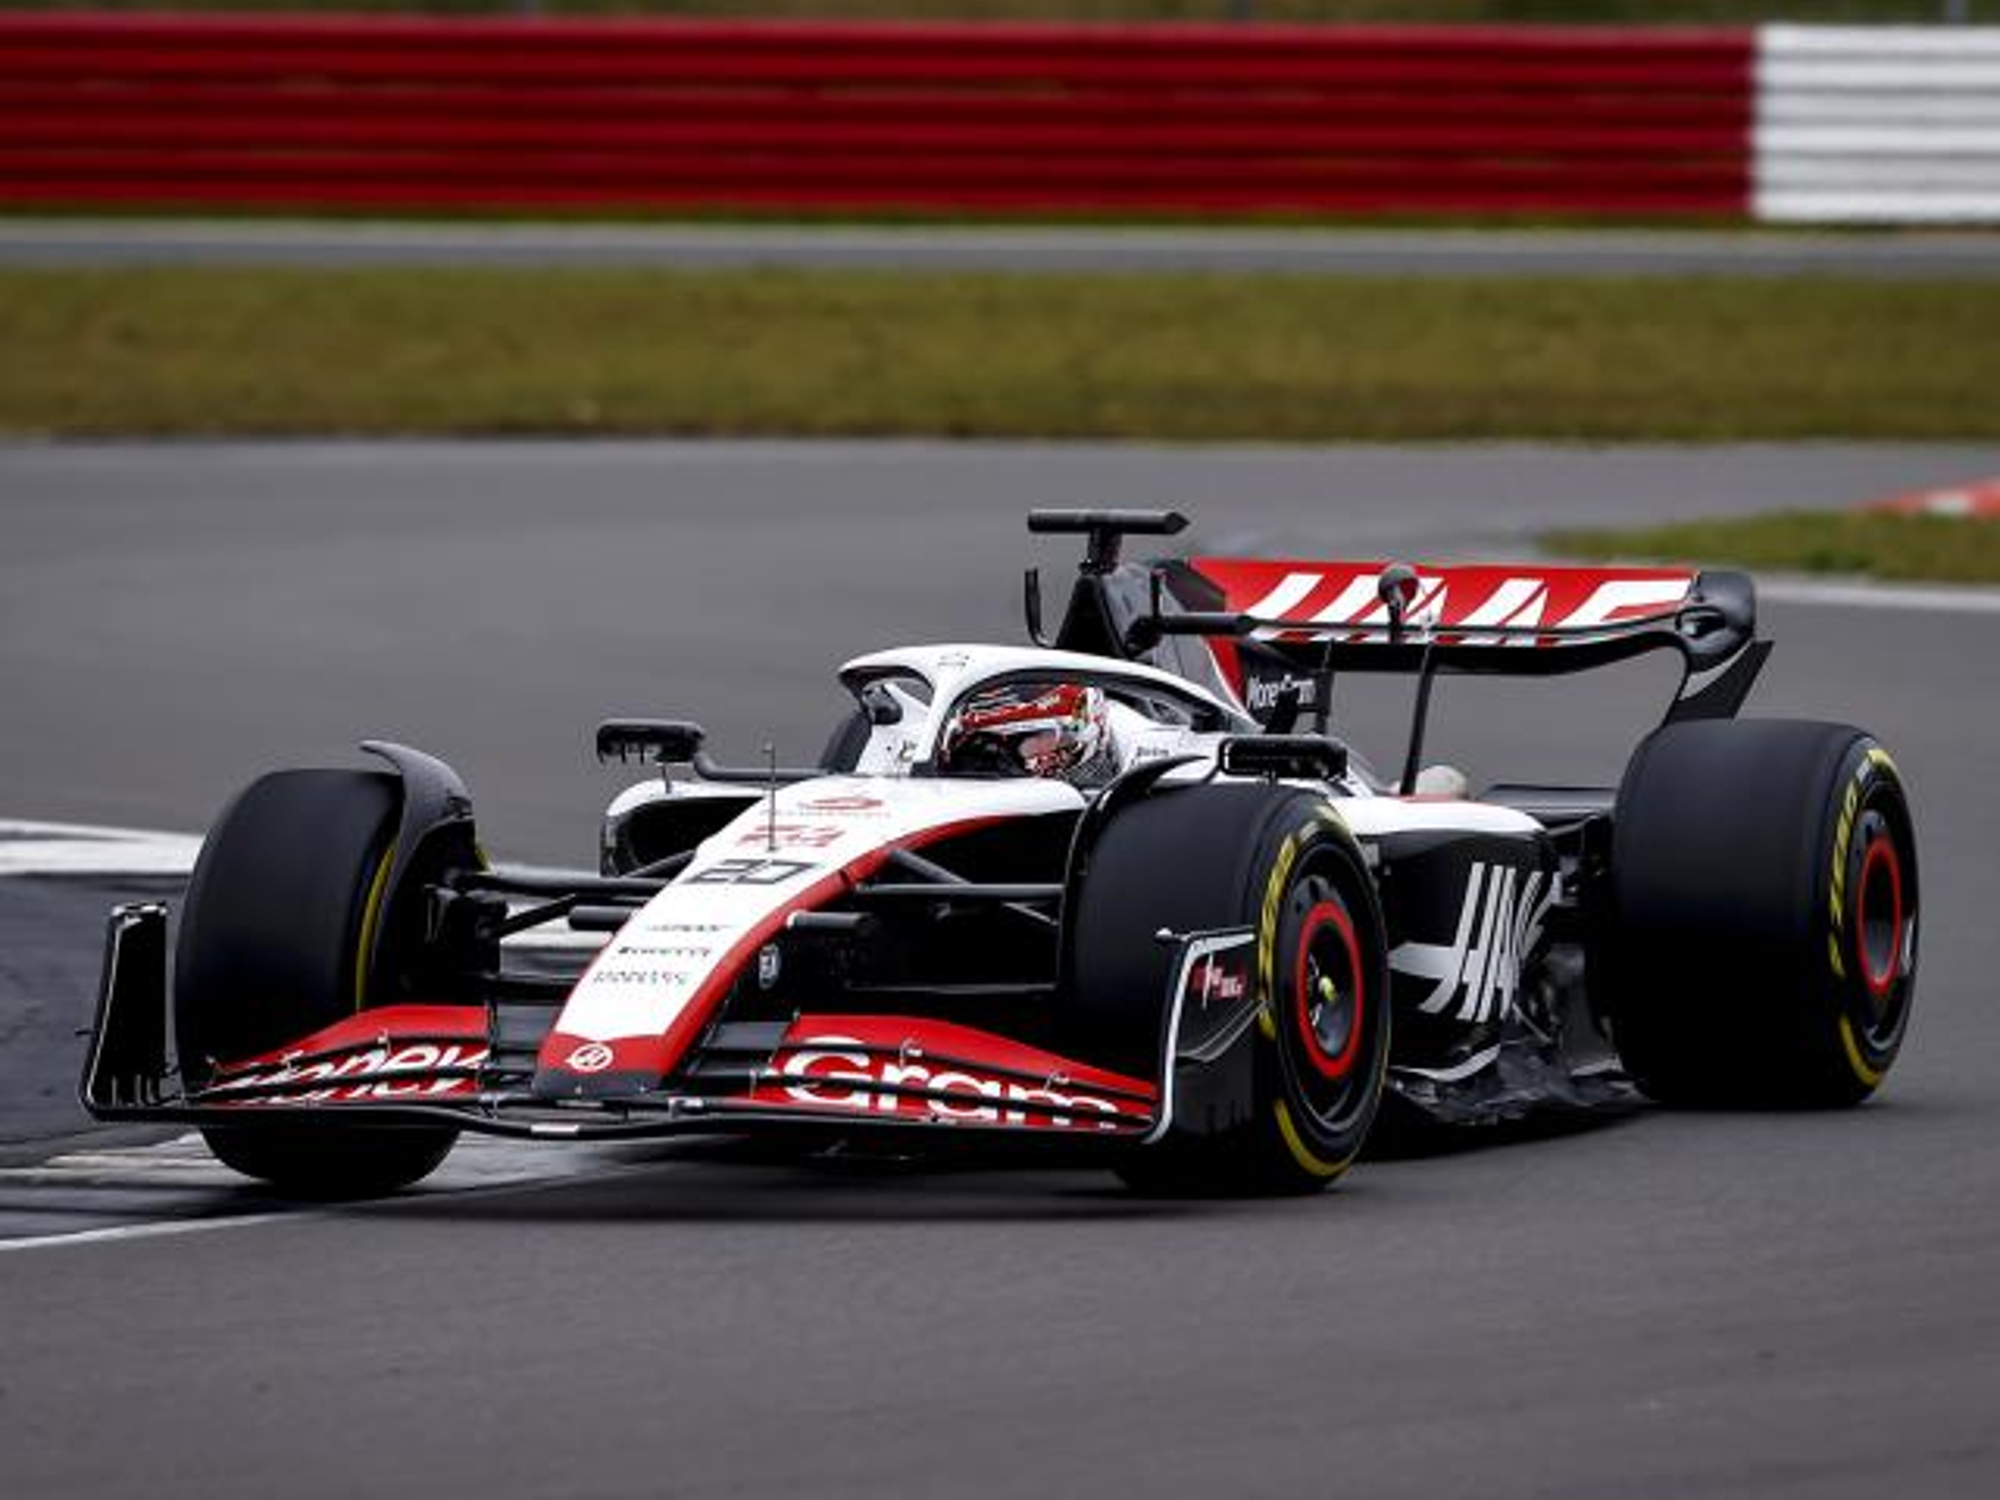 Haas F1 team Formula 1 race car on the track.